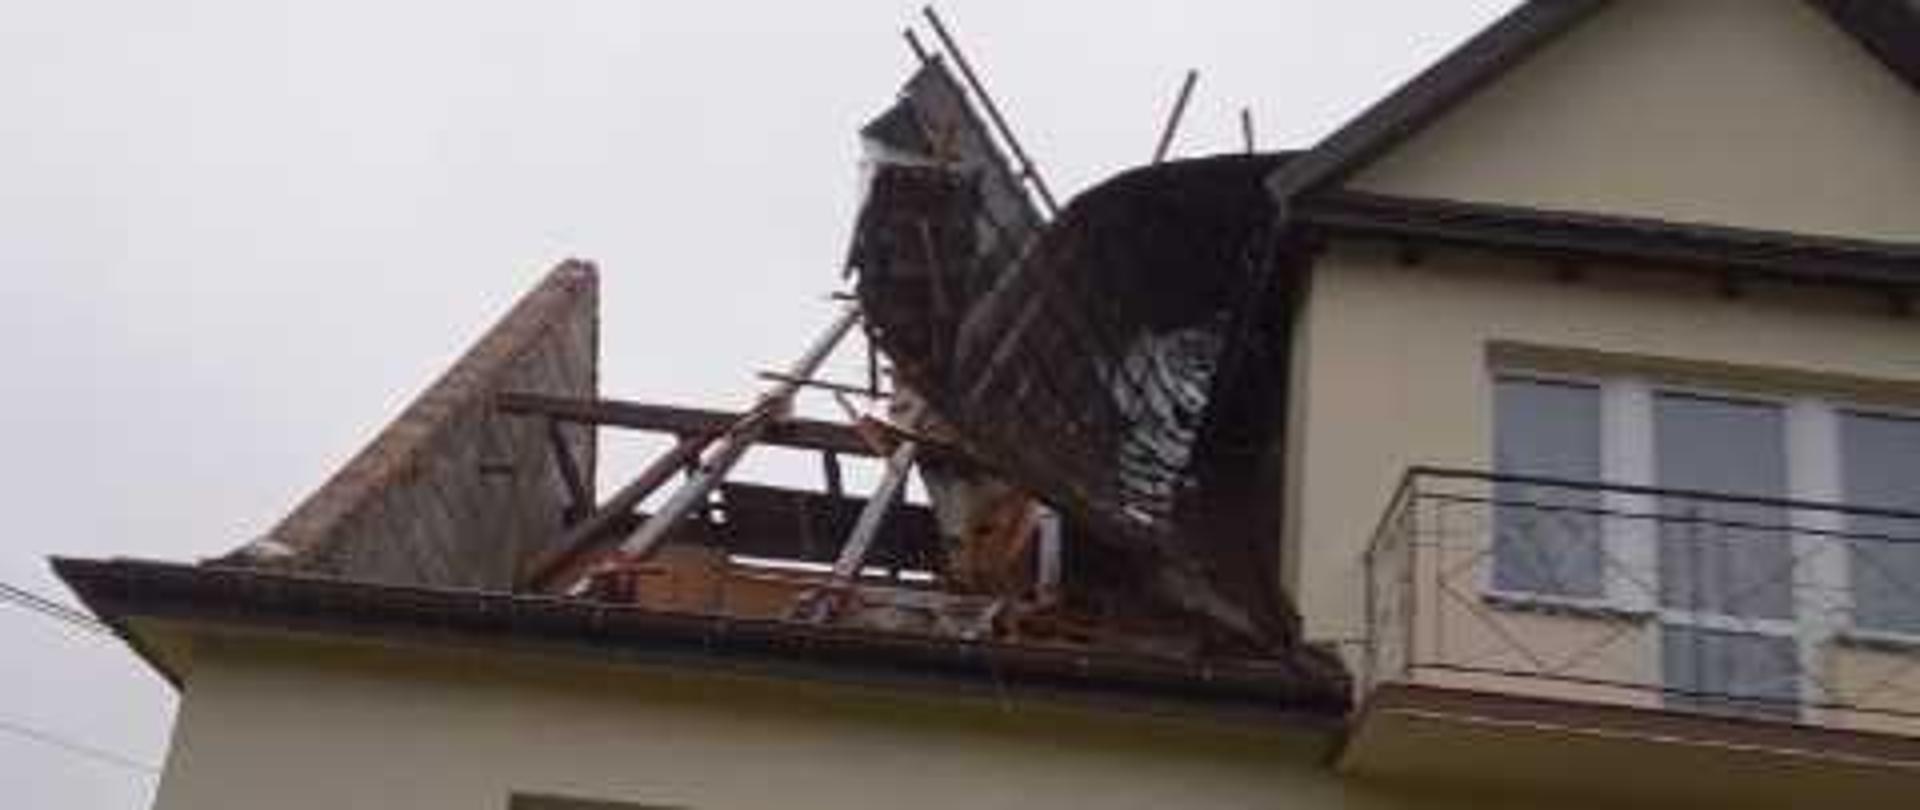 Zdjęcie przedstawia uszkodzenia części dachowej na budynku mieszkalnym powstałe w wyniku silnego wiatru.